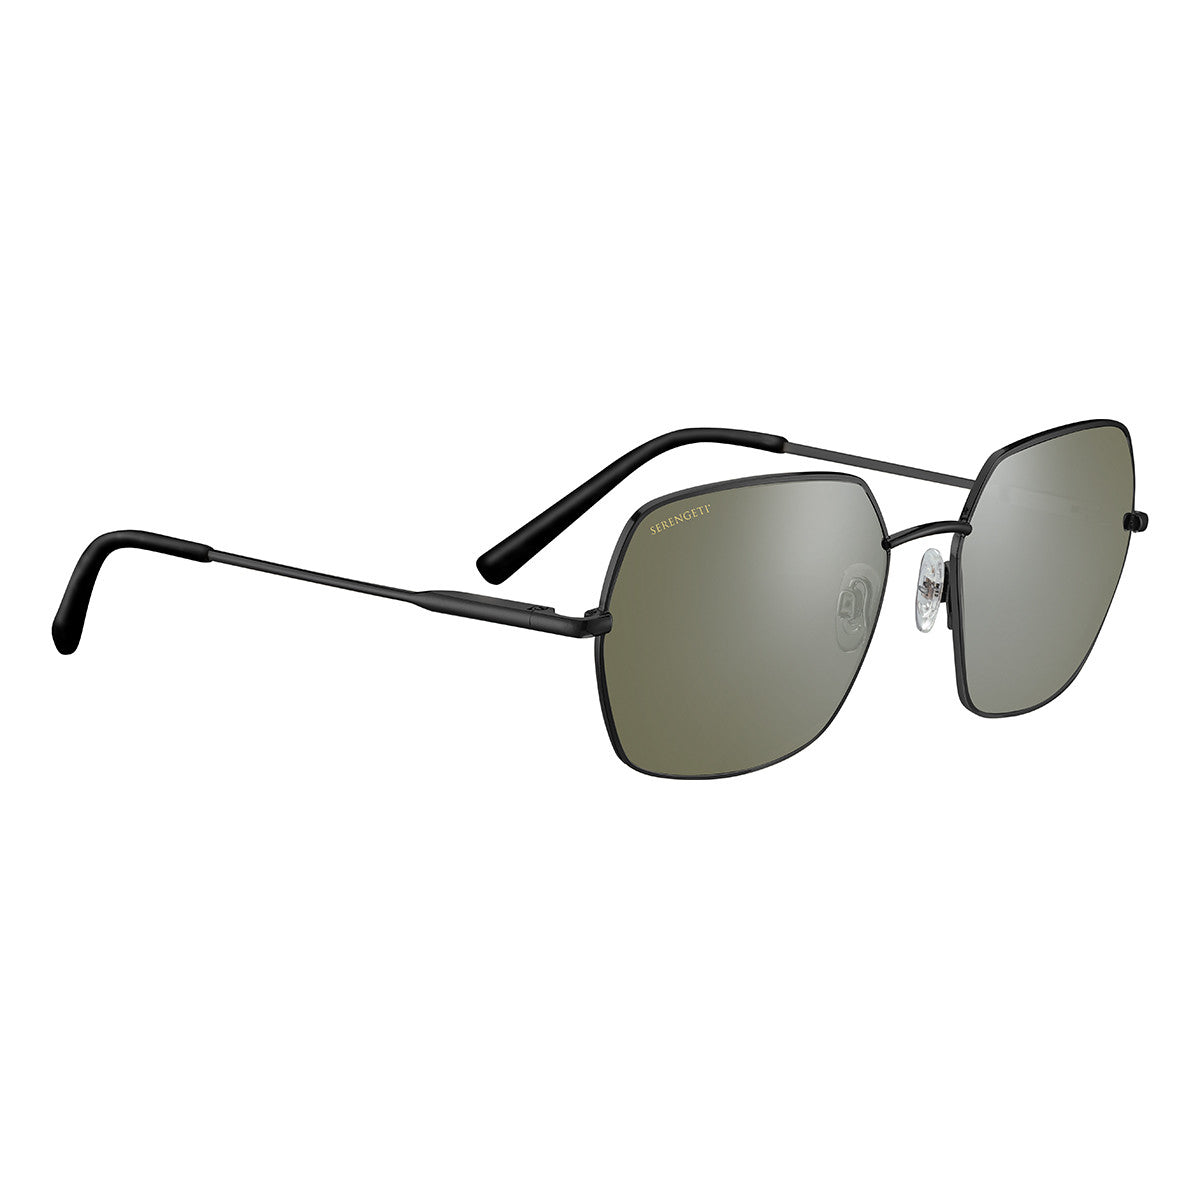 Serengeti Loy Sunglasses  Shiny Black Medium, Large